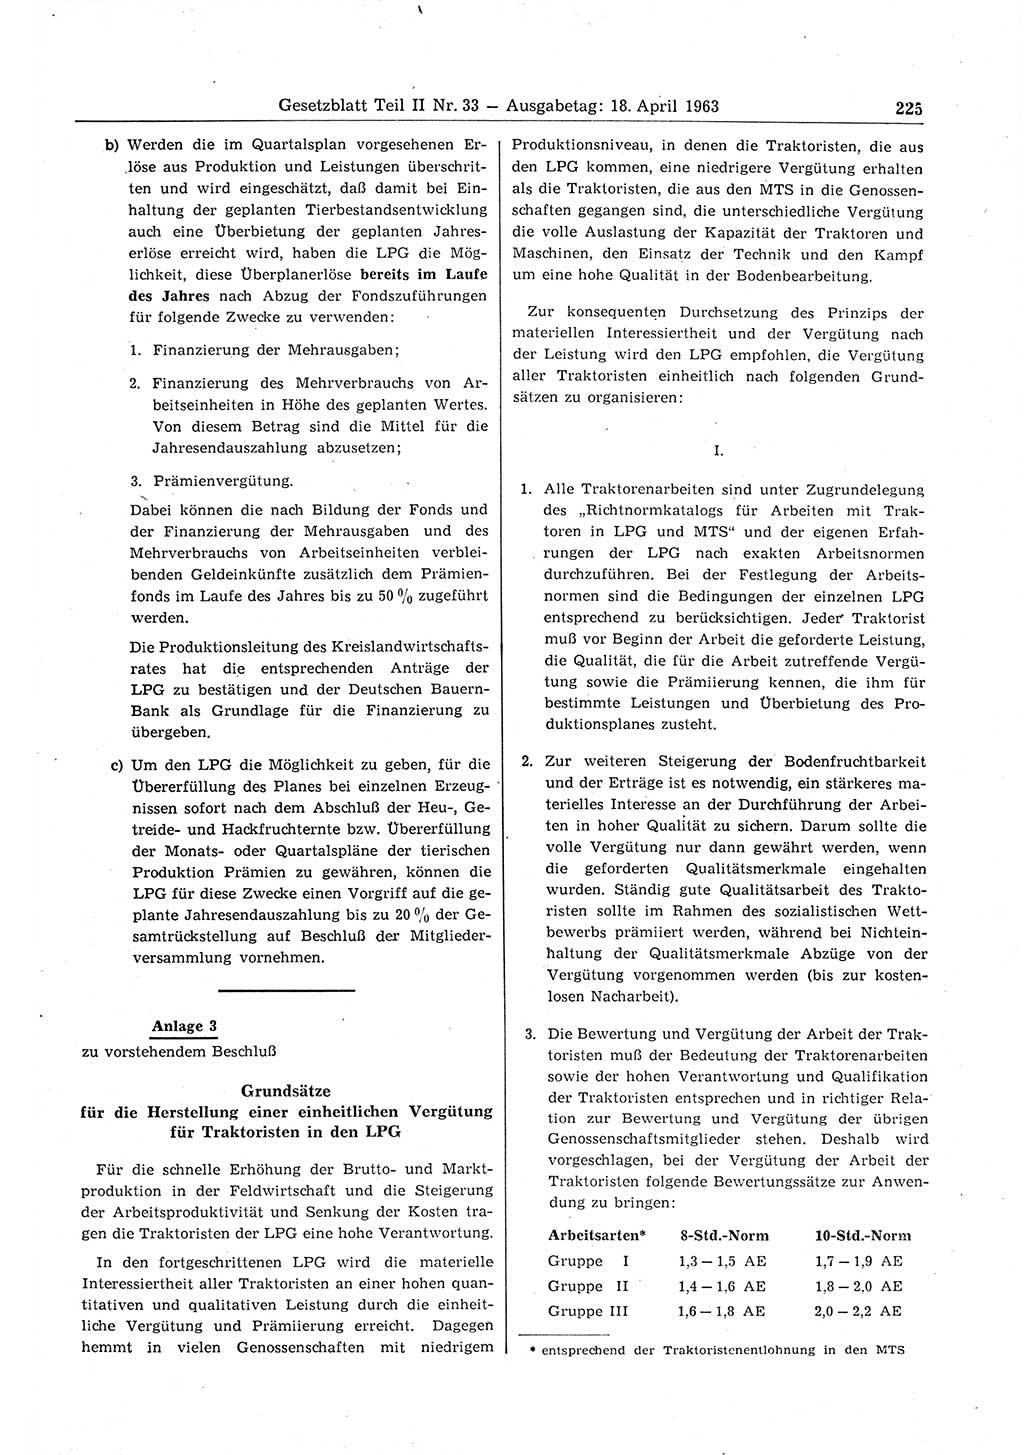 Gesetzblatt (GBl.) der Deutschen Demokratischen Republik (DDR) Teil ⅠⅠ 1963, Seite 225 (GBl. DDR ⅠⅠ 1963, S. 225)